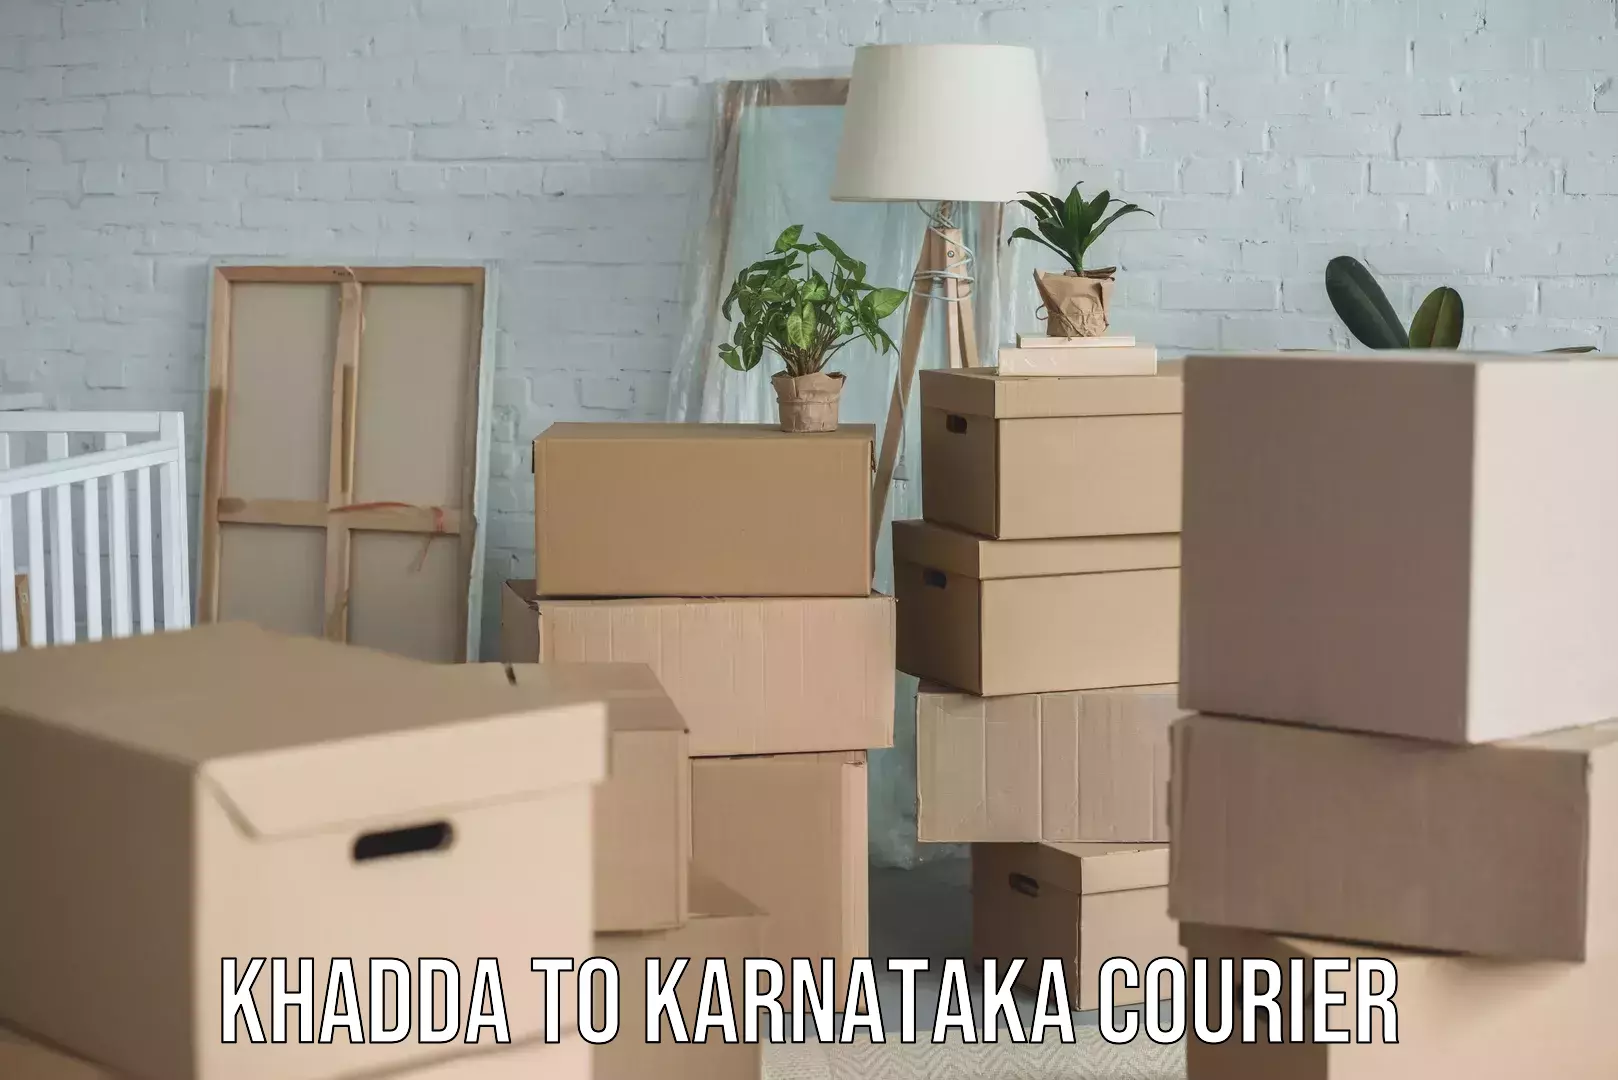 Nationwide moving services Khadda to Karnataka